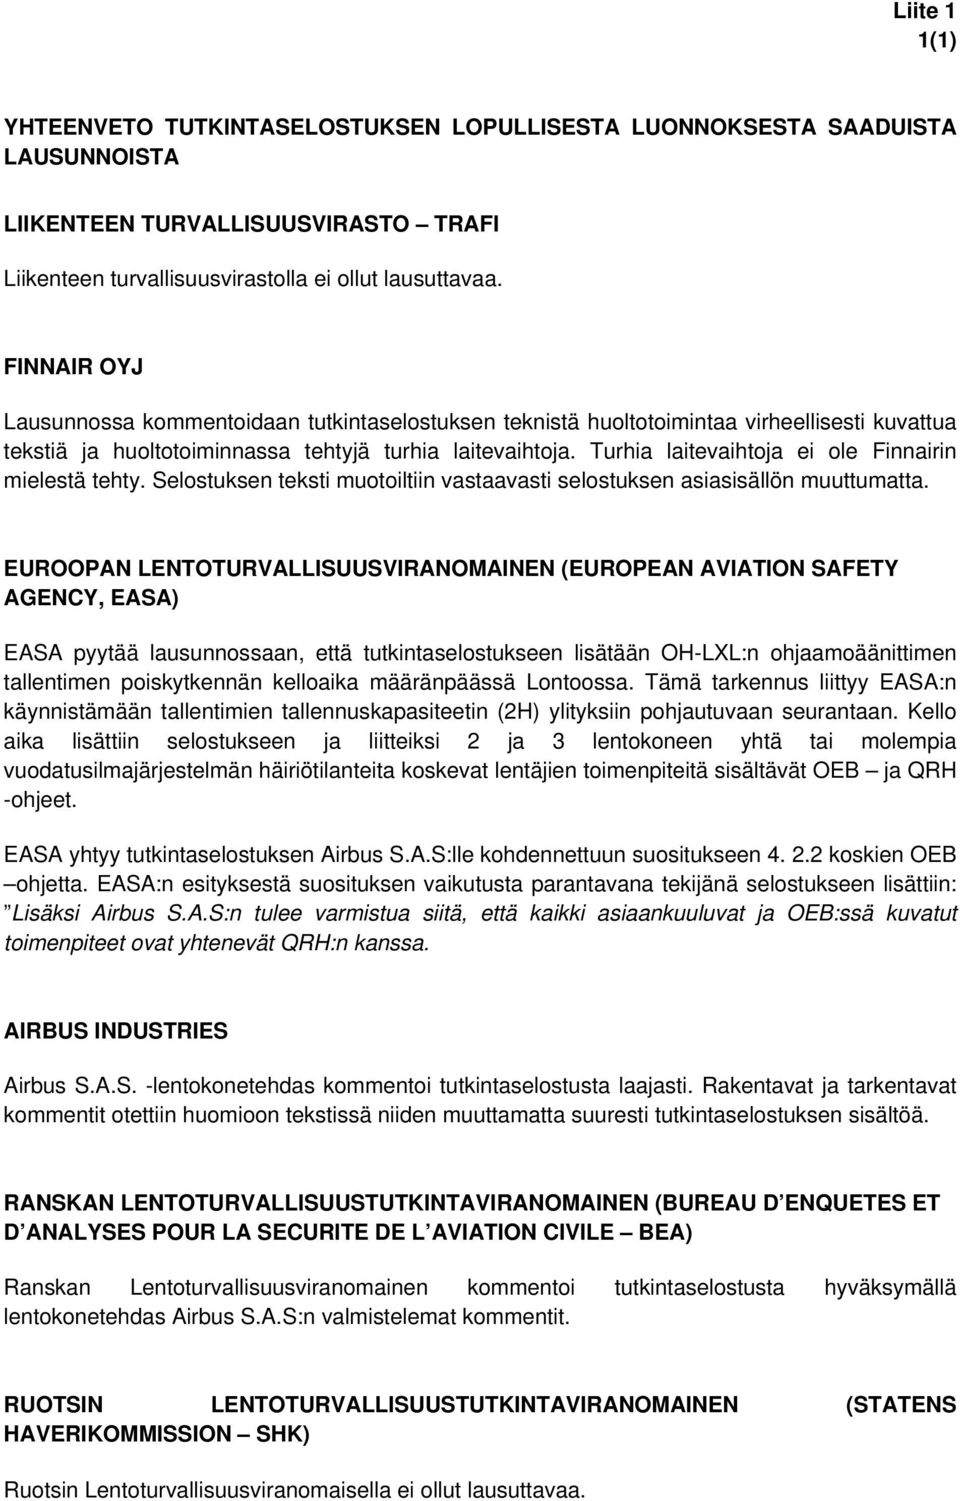 Turhia laitevaihtoja ei ole Finnairin mielestä tehty. Selostuksen teksti muotoiltiin vastaavasti selostuksen asiasisällön muuttumatta.